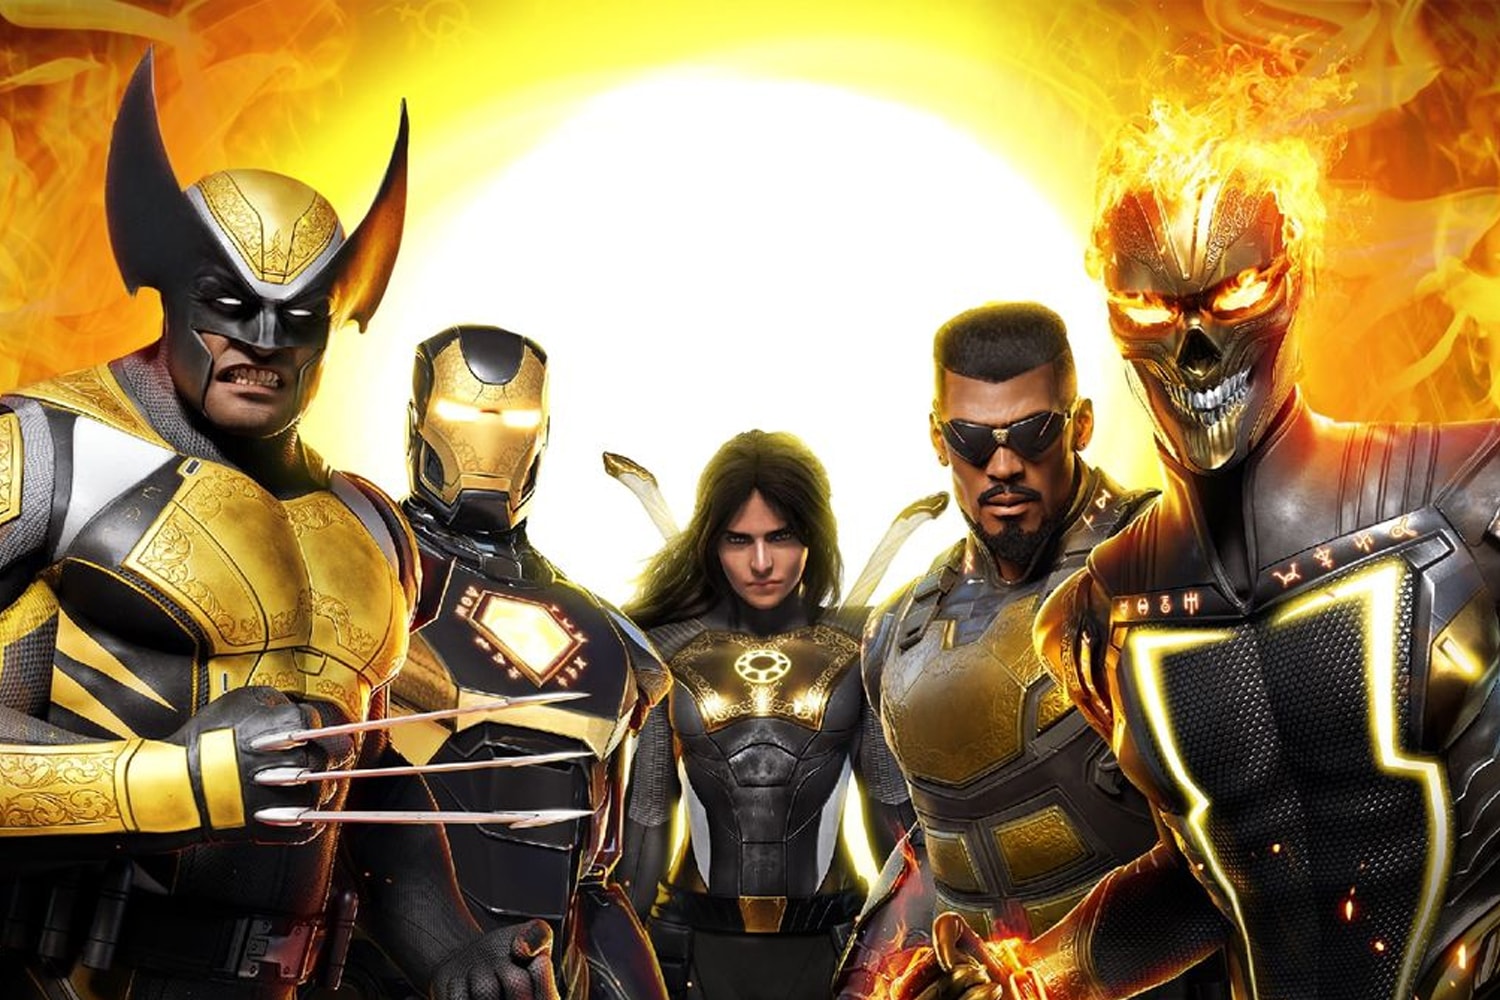 消息稱 Marvel 正在開發全新英雄大作電影《午夜之子 Midnight Suns》